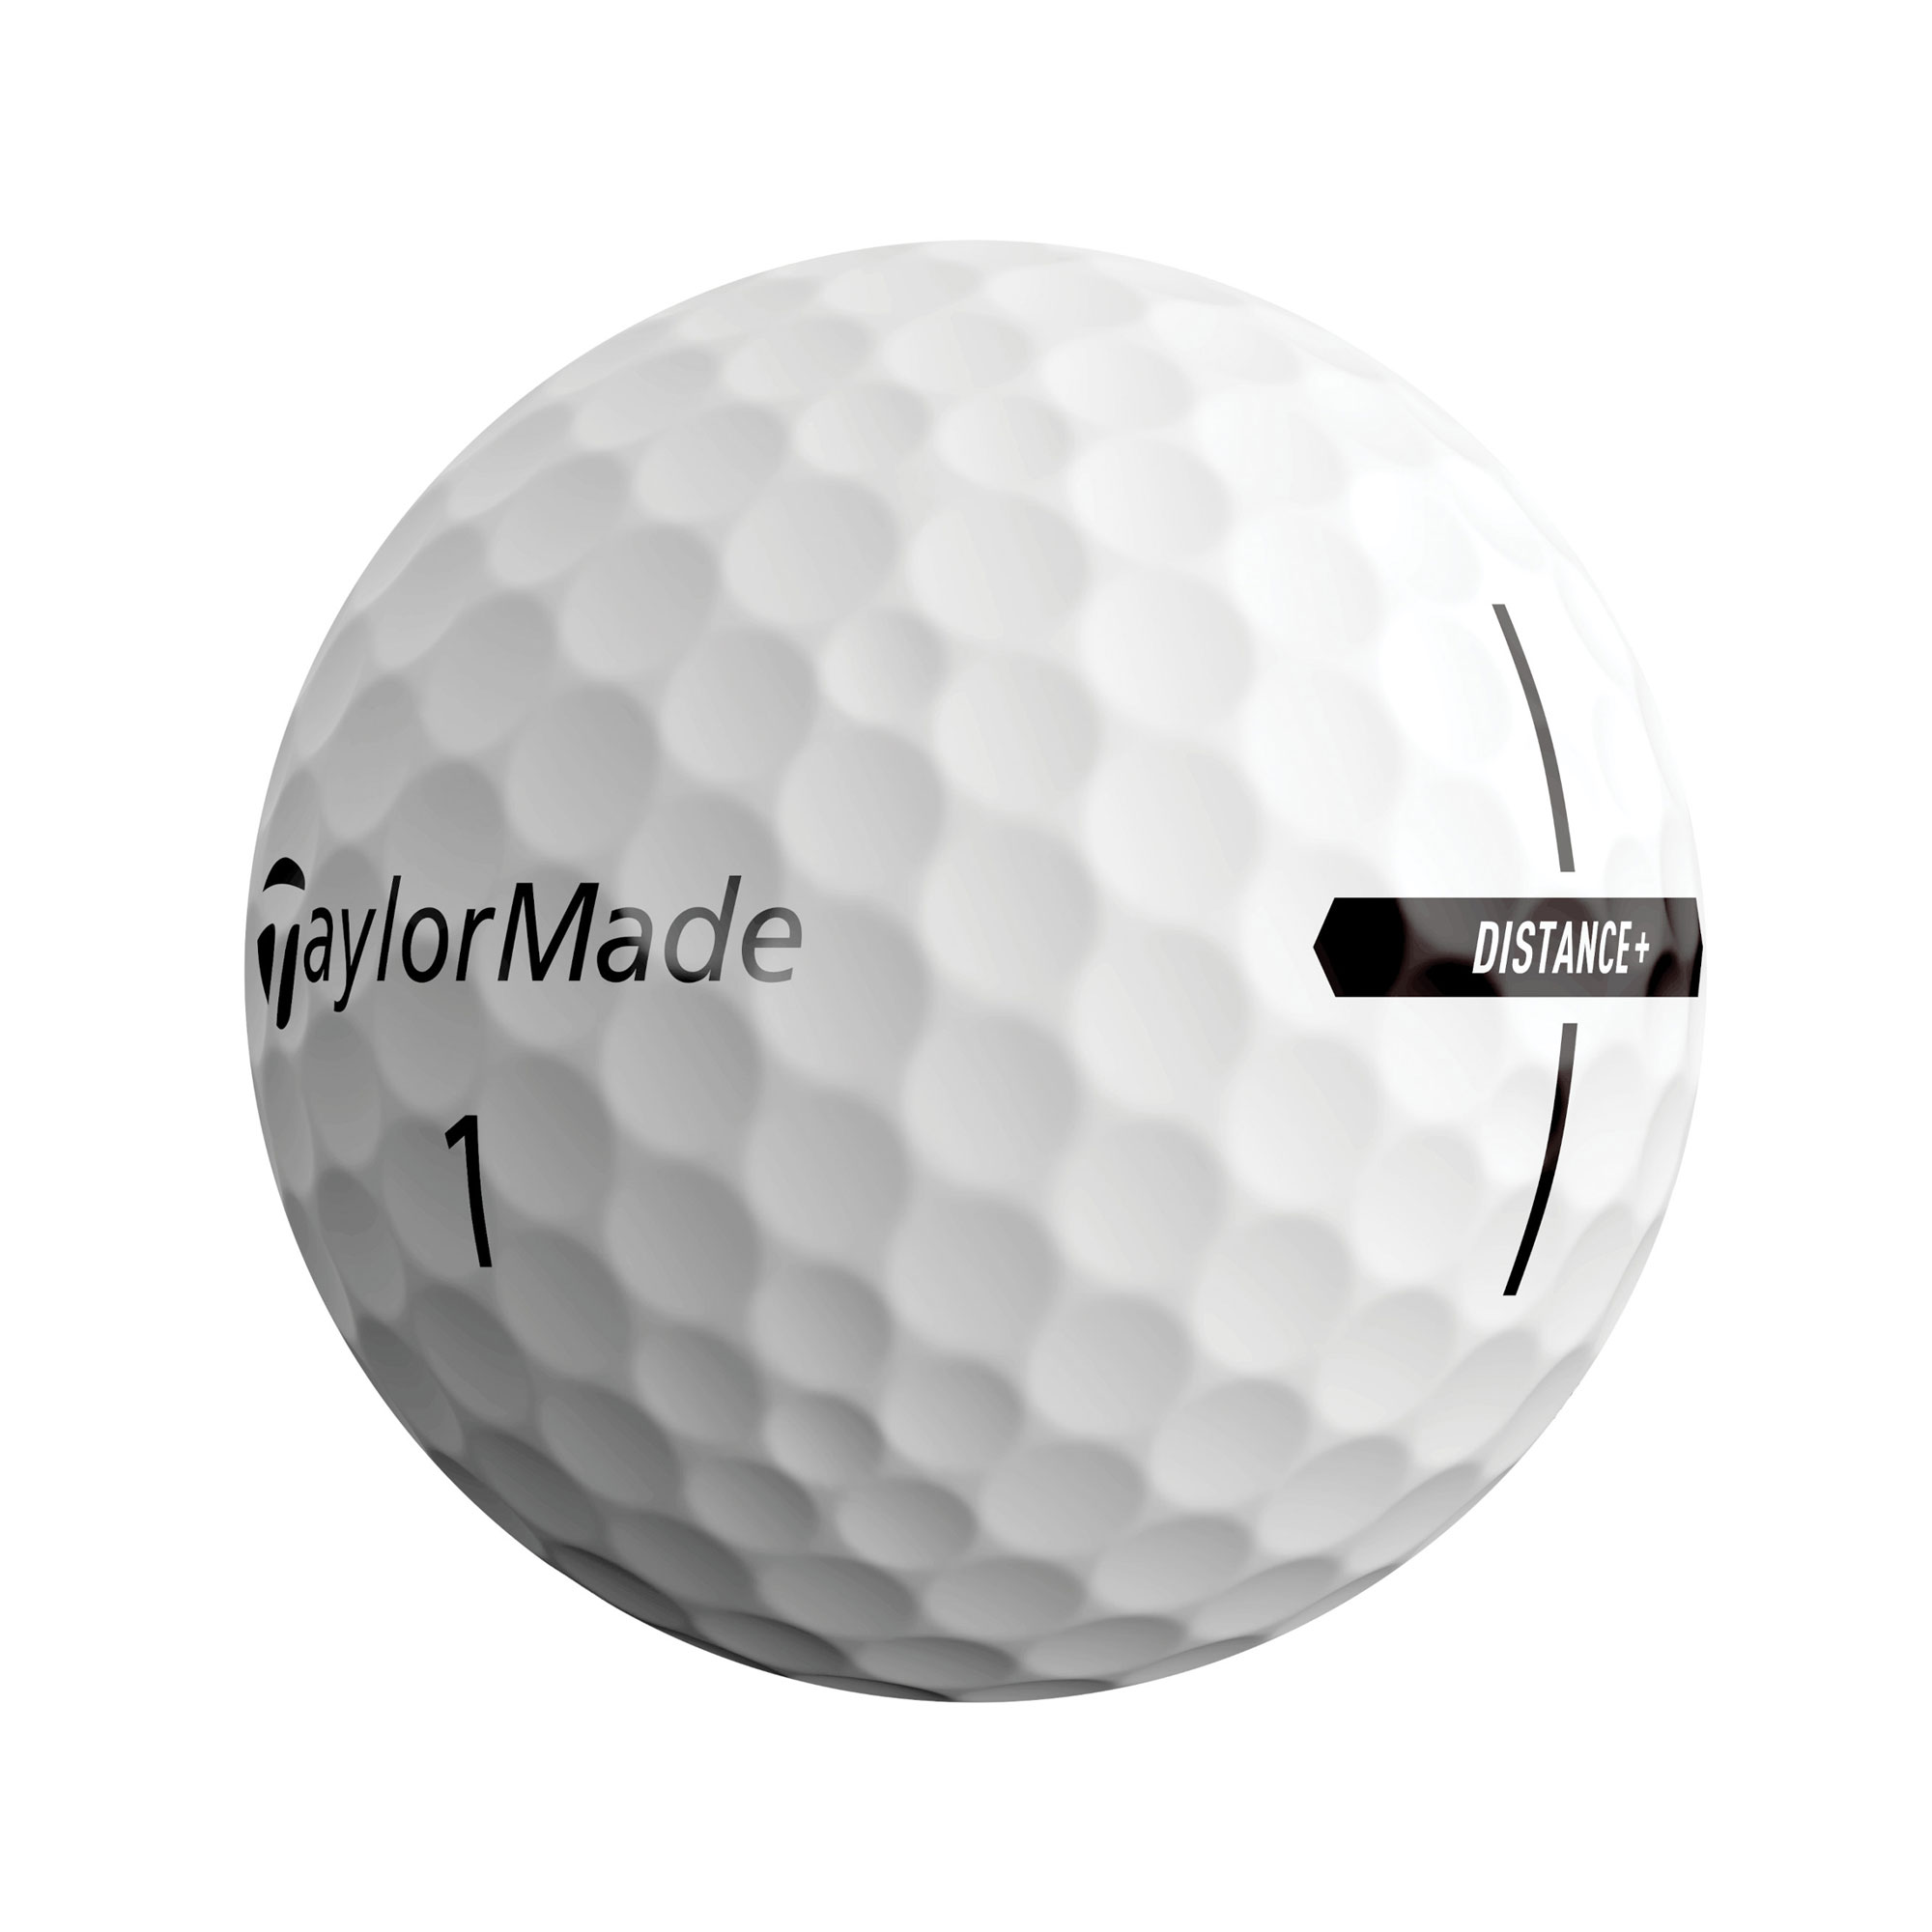 TaylorMade Distance+ Golfbälle bedruckt, weiss (VPE à 12 Bälle)